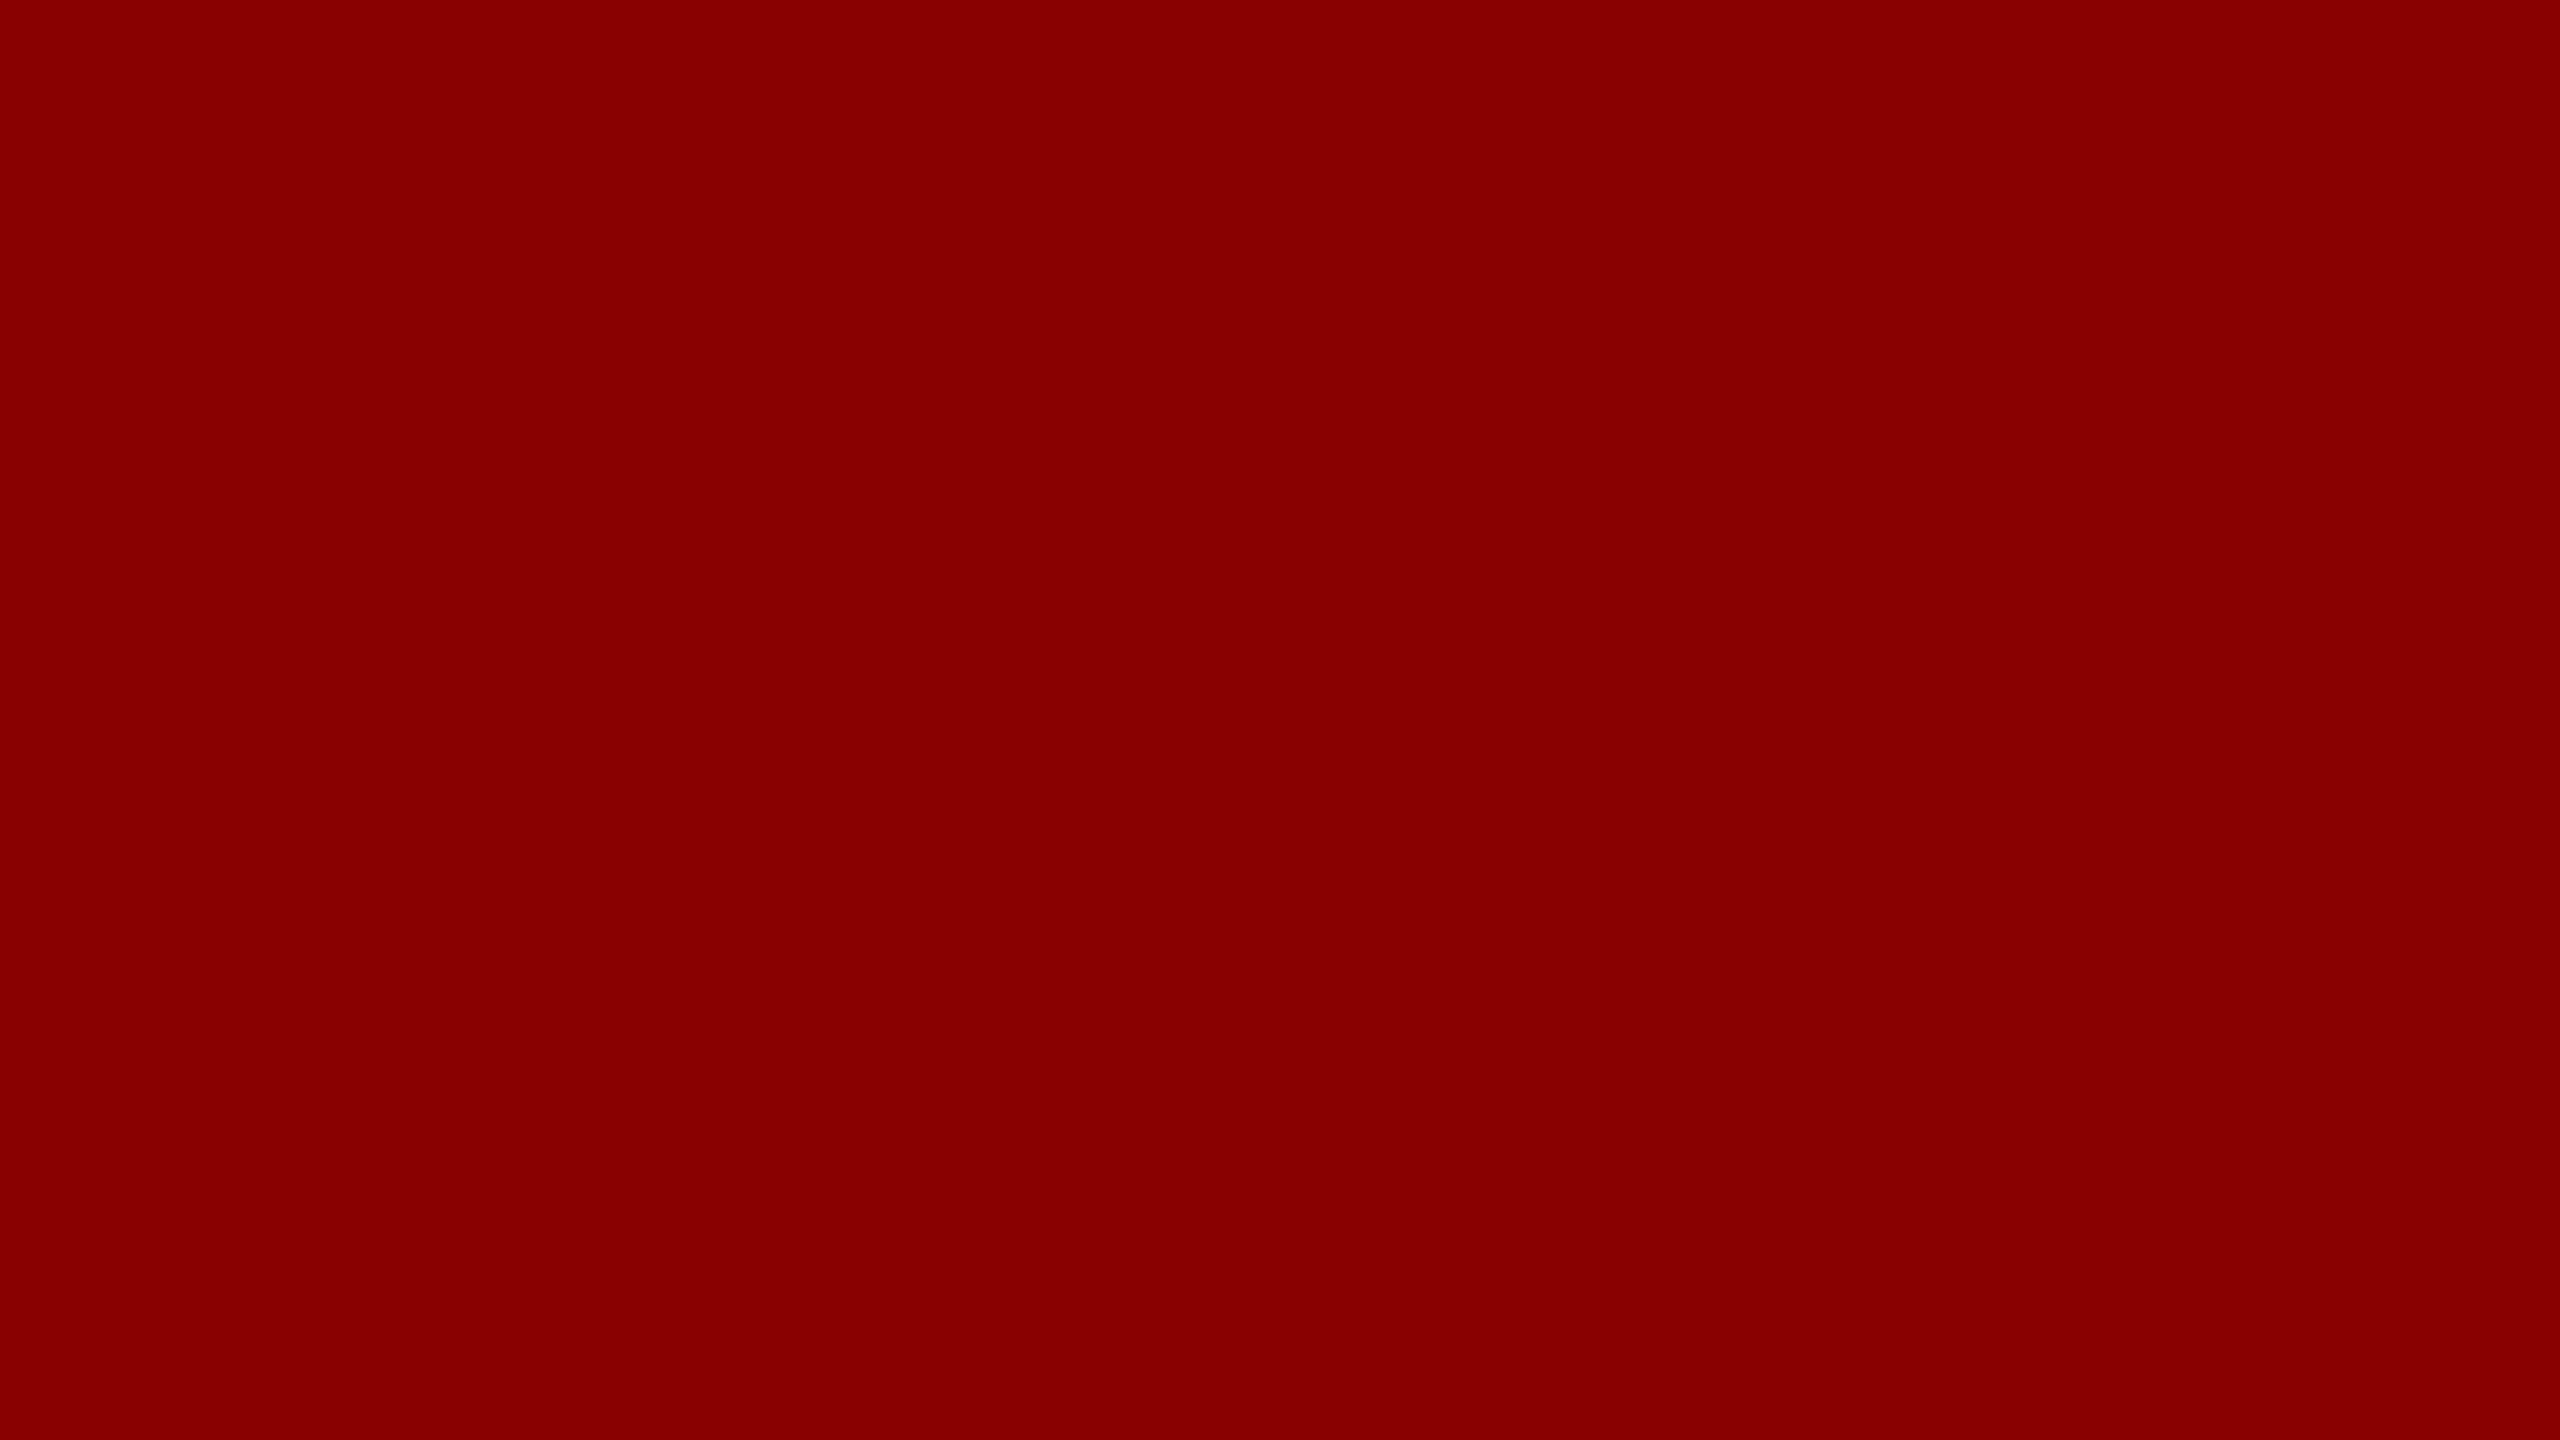 Dunkelroterhintergrund, Einfarbige Rote Farbe